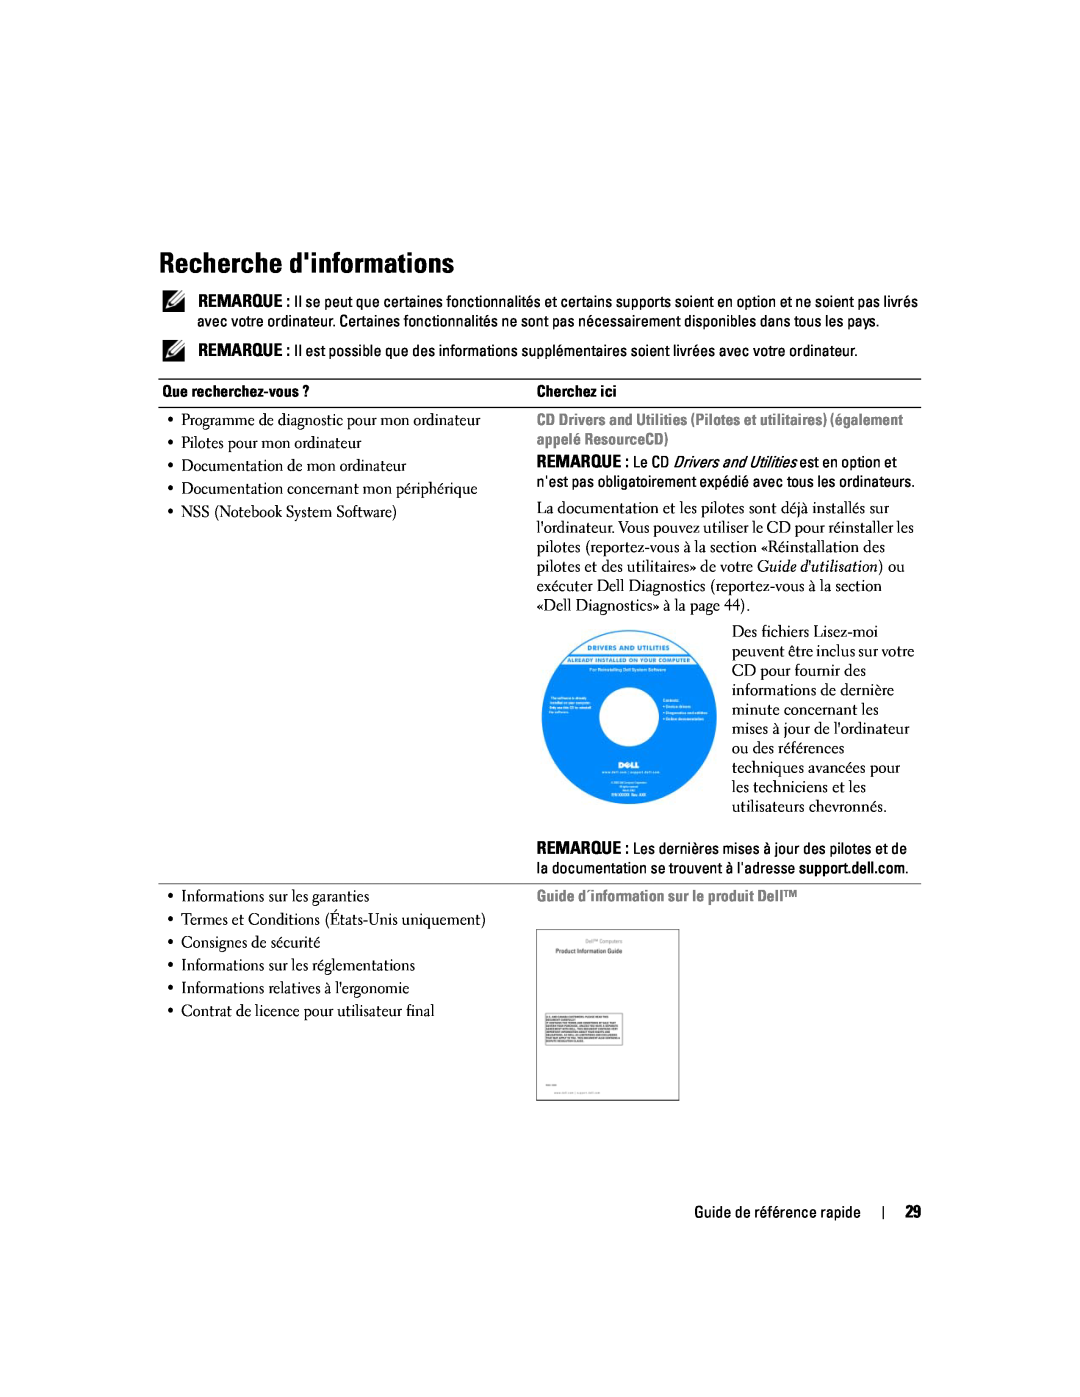 Dell D620 manual Recherche dinformations, appelé ResourceCD, Guide d´information sur le produit Dell 